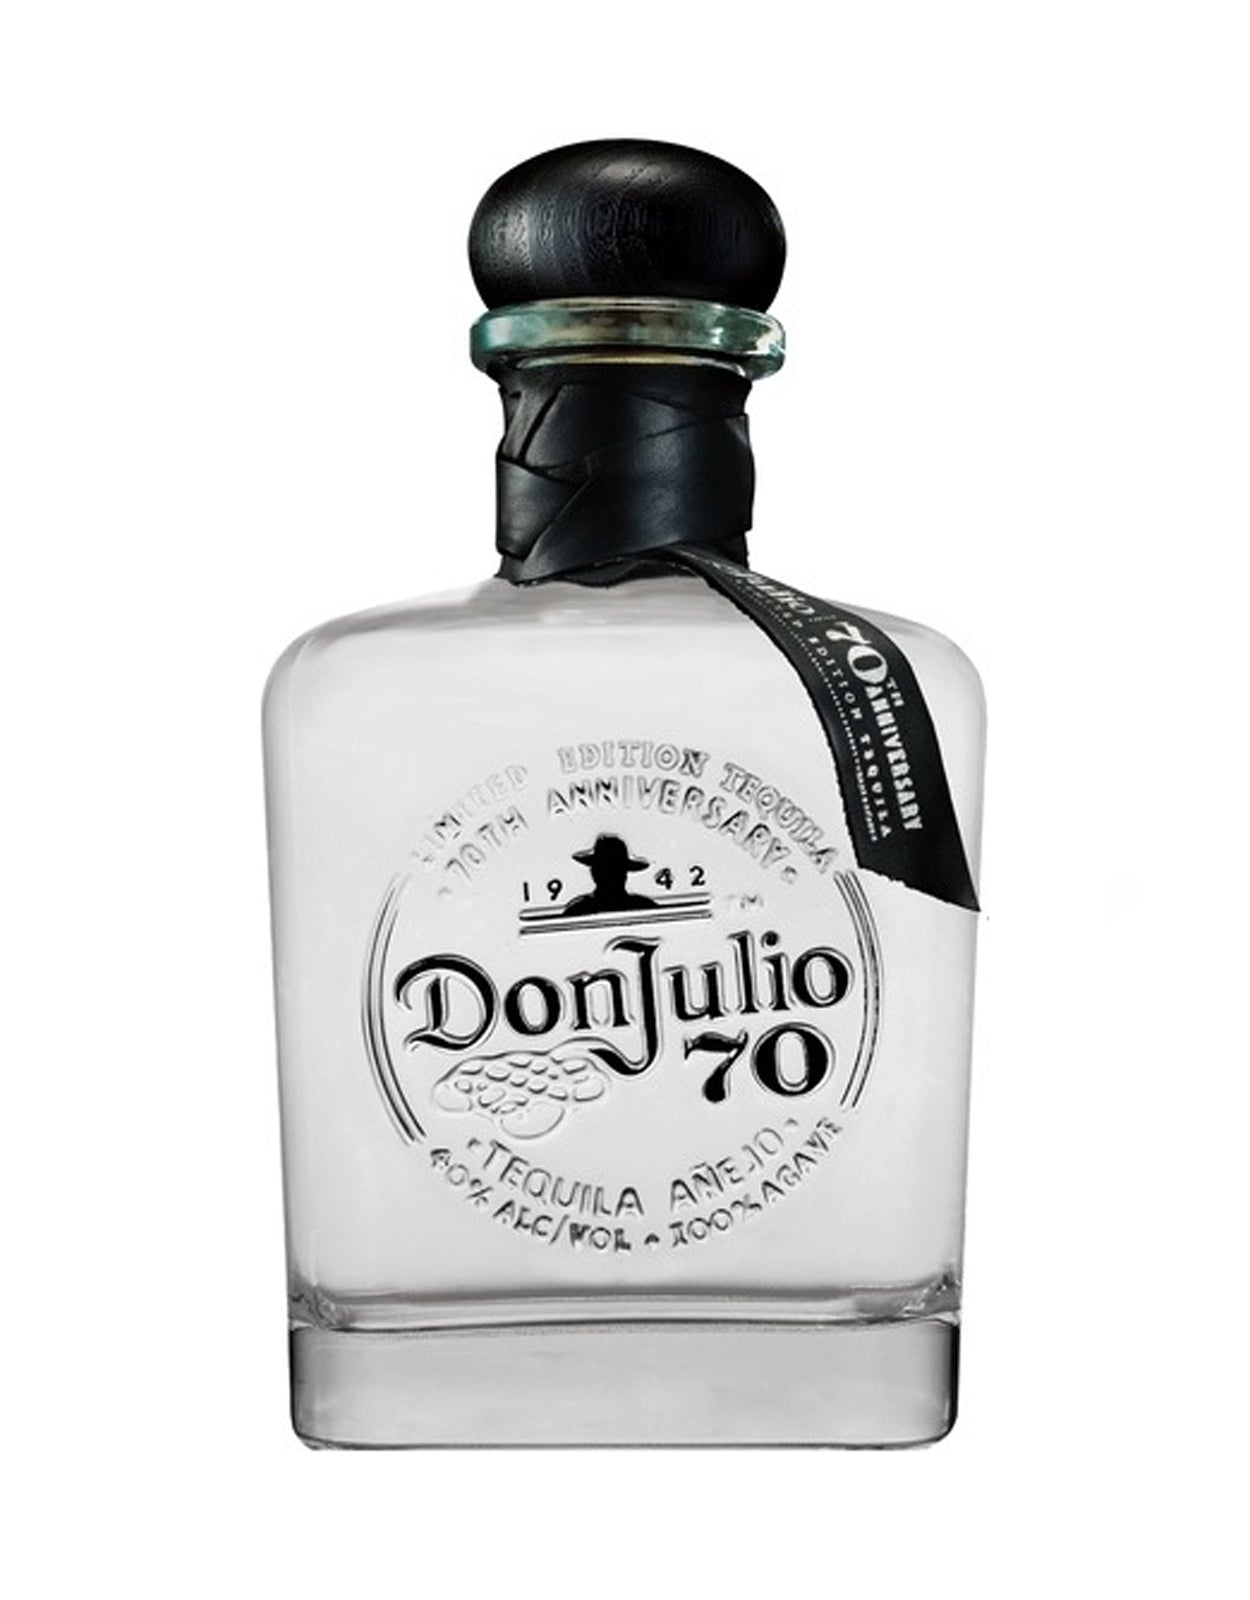 Don Julio 70th Anniversary Anejo Claro Tequila